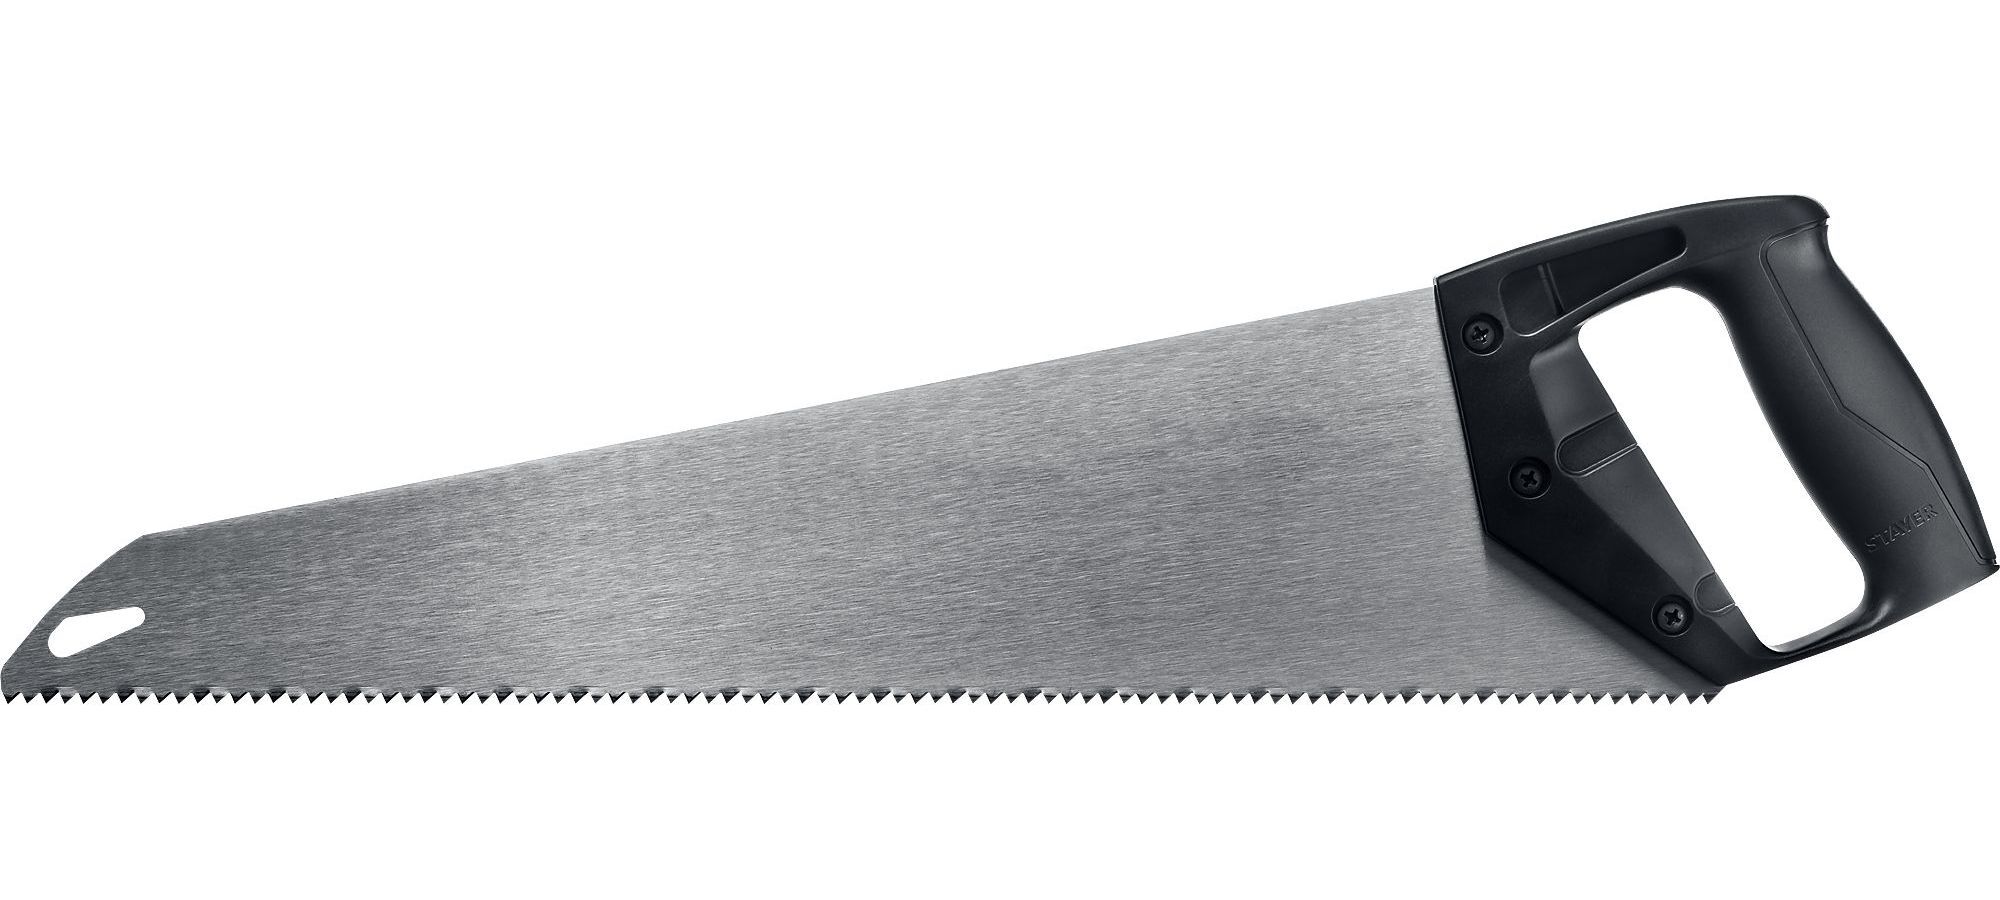 Ножовка ударопрочная (пила) ?TopCut? 500 мм, 5 TPI, быстрый рез поперек волокон, для крупных и средних заготовок, STAYER